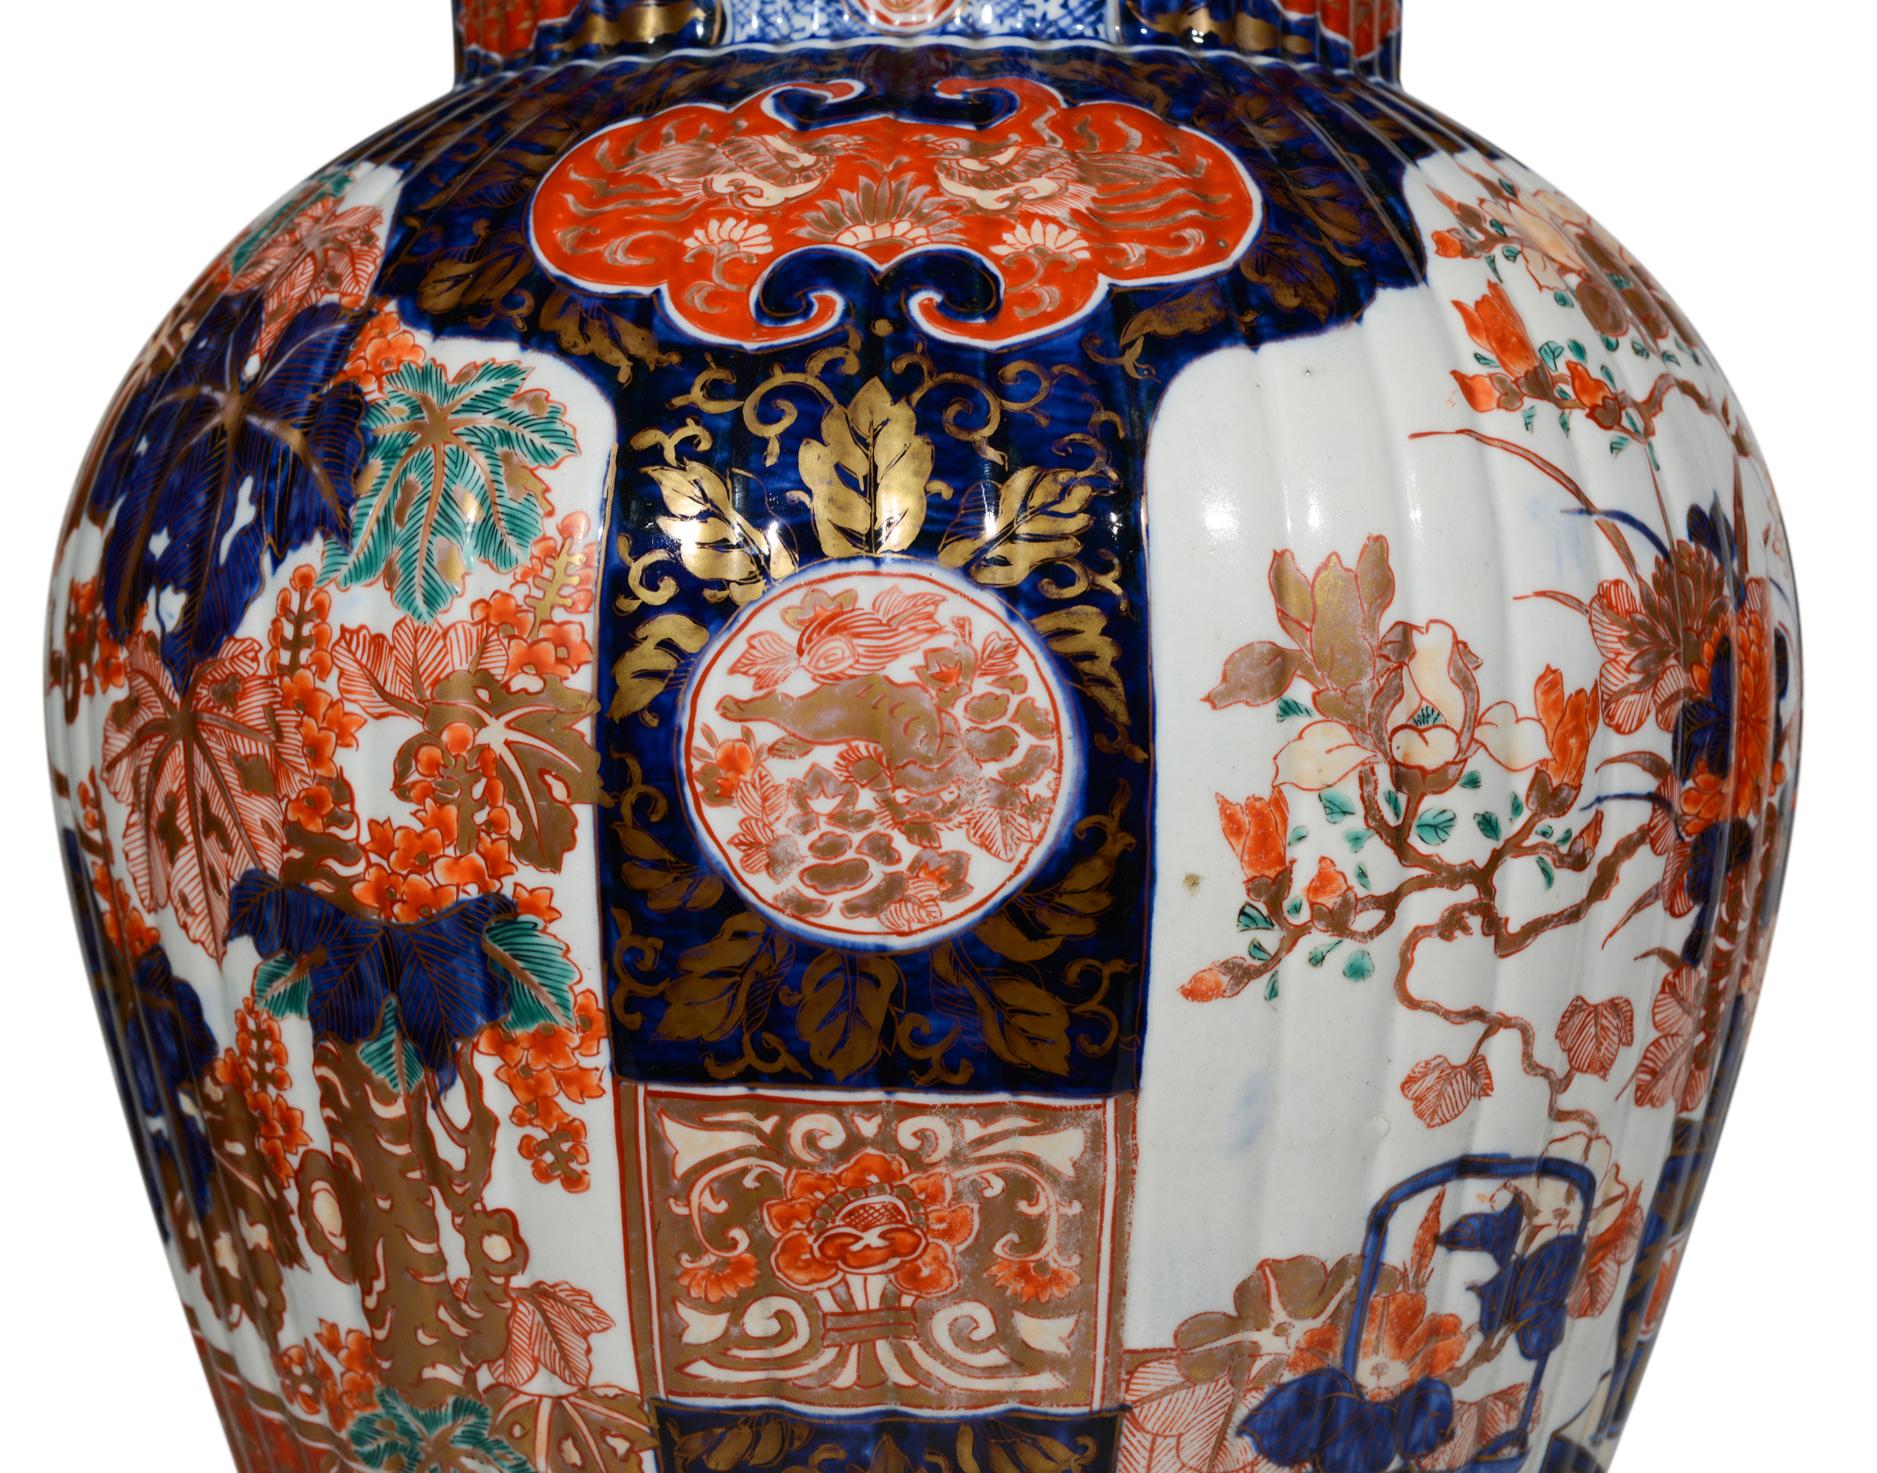 Superbe paire de grands vases japonais Imari du XIXe siècle, décorés dans la palette typique de bleus foncés et de rouges de fer sur fond blanc avec des reflets dorés, les panneaux principaux représentant de grandes compositions florales dans un